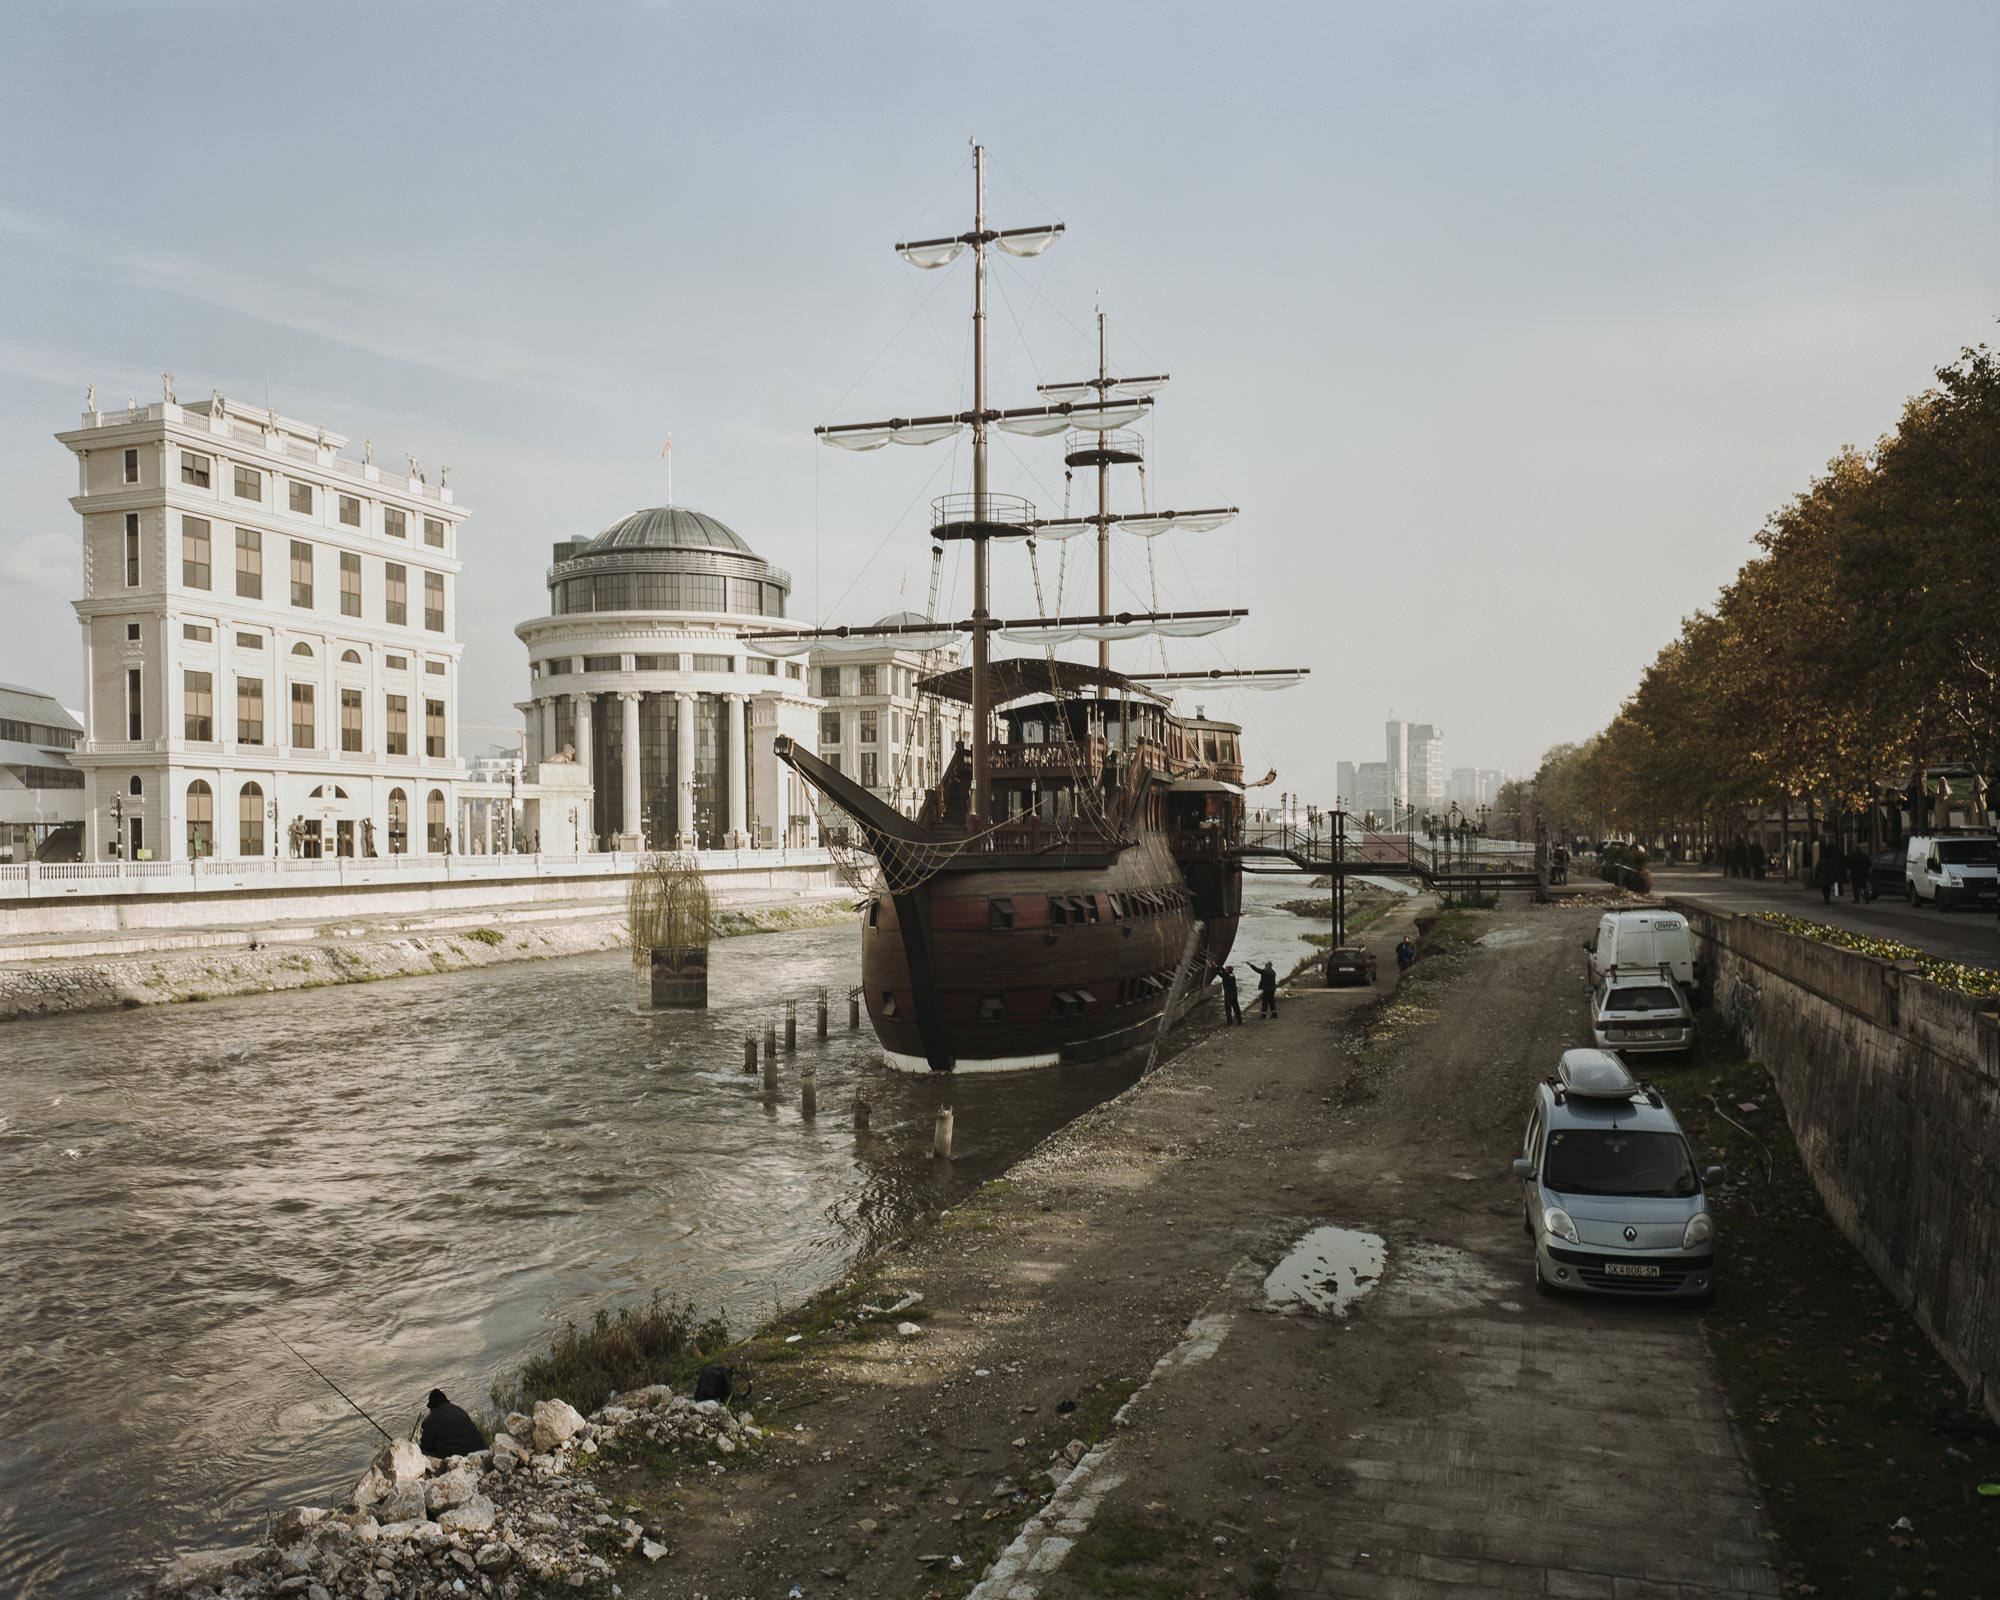 На реке Вардар в Скопье стоит&nbsp;несколько кораблей, построенных&nbsp;в качестве ресторанов и отелей
